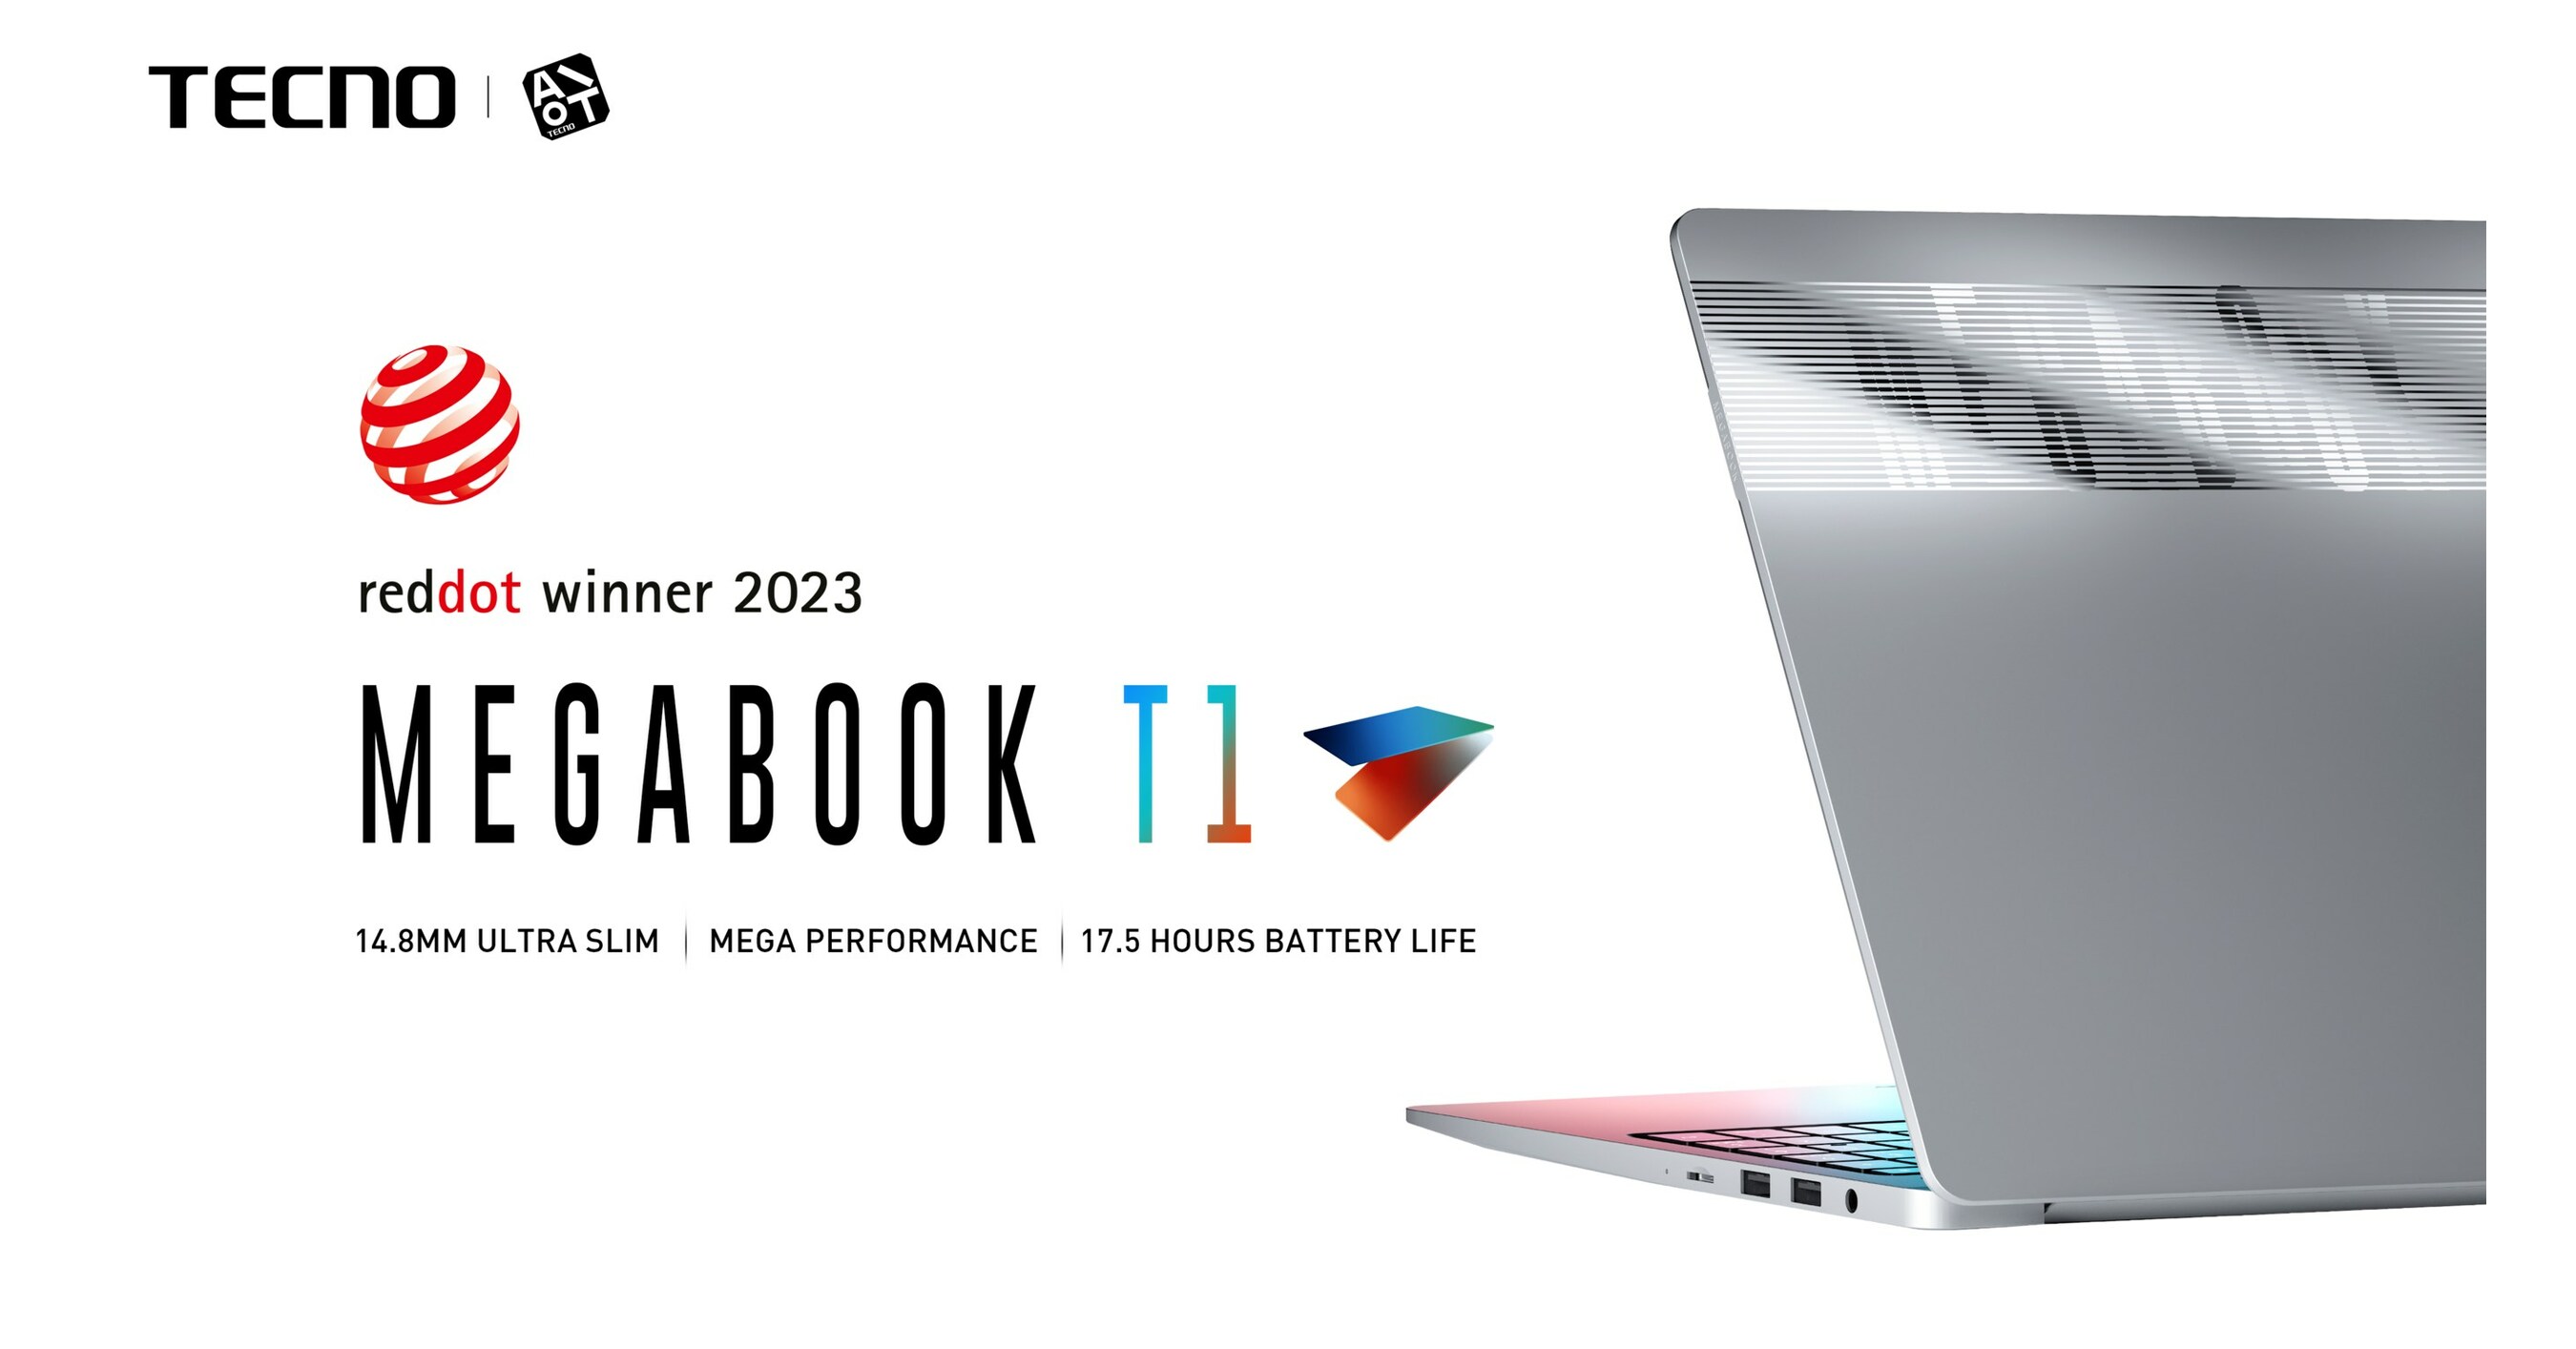 Первый ноутбук TECNO MEGABOOK T1 получил награду Red Dot Award 2023